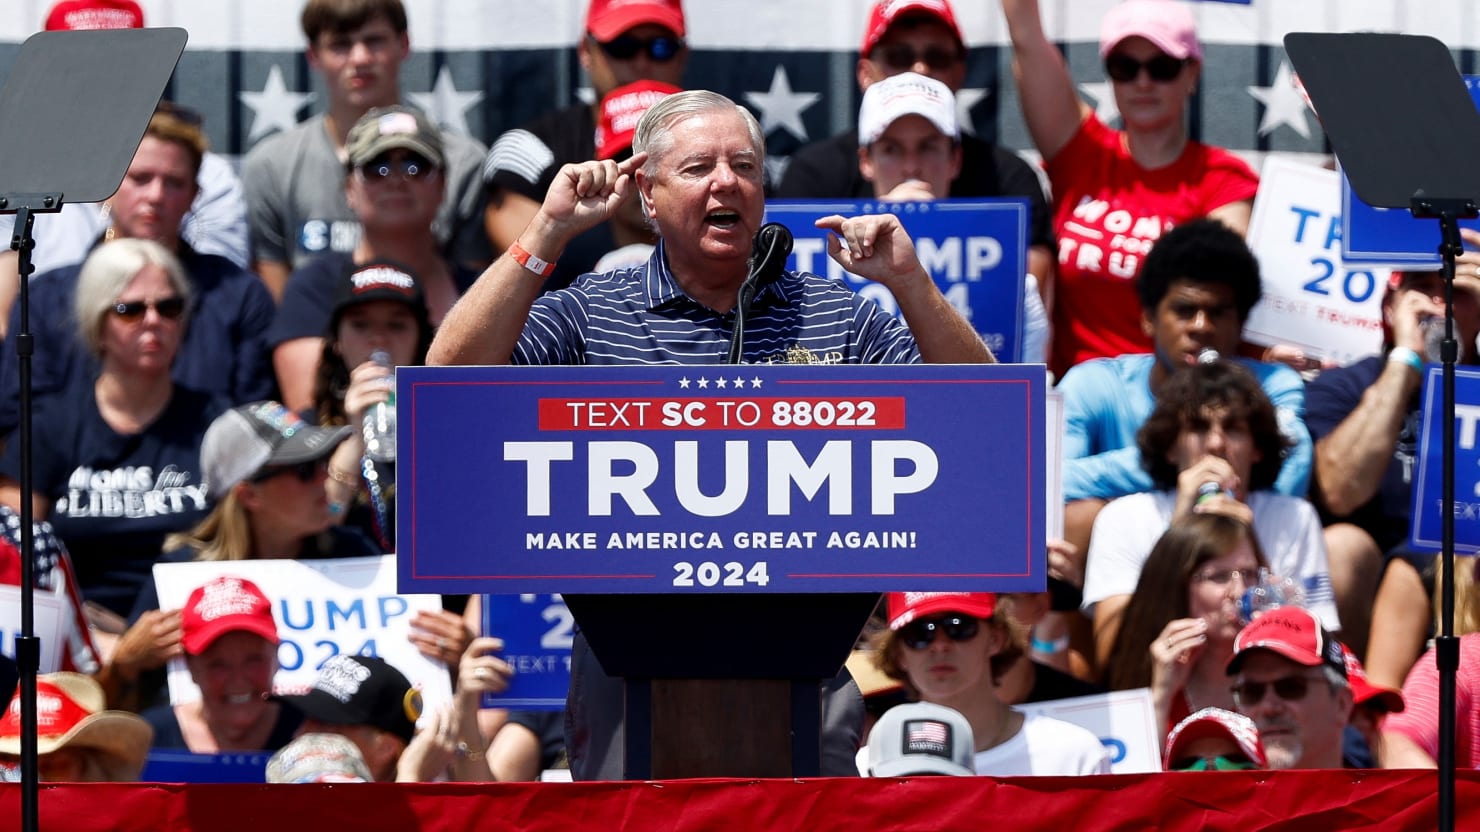 Lindsey Graham abuchea durante el discurso de Trump en Carolina del Sur